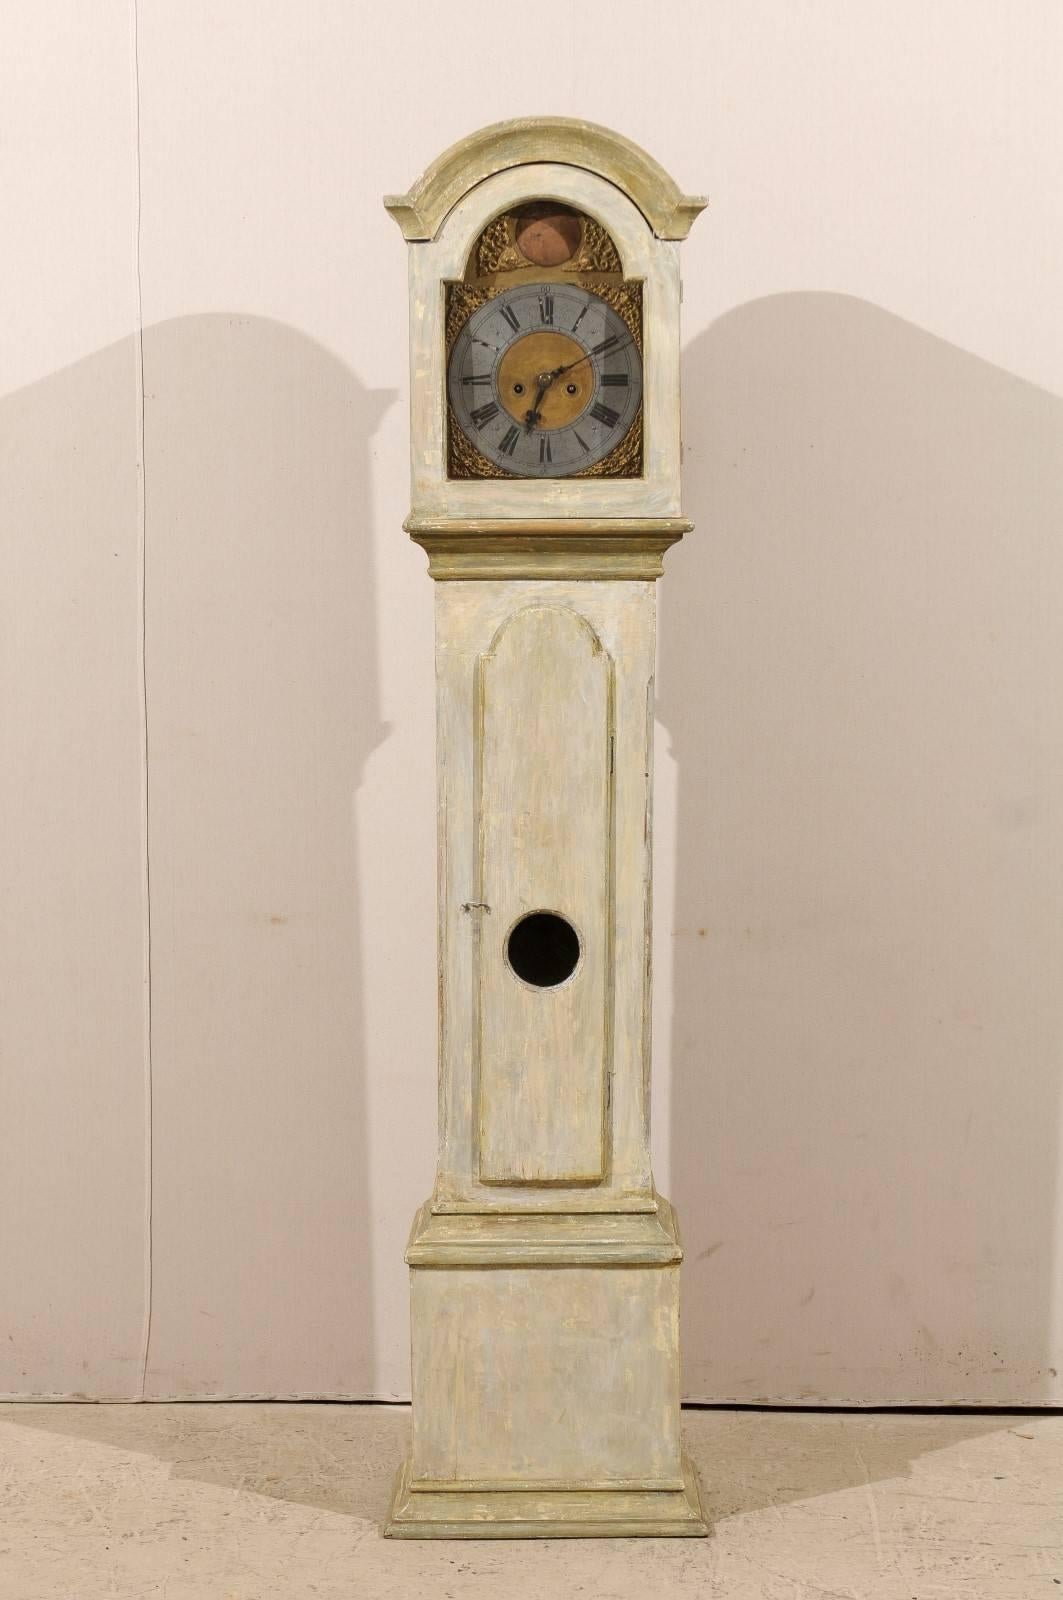 Une horloge suédoise du 19ème siècle à long boîtier. Cette horloge suédoise à corps droit présente un écusson de bonnet et un cadran annulaire en étain sur un fond doré.  Cette horloge a conservé sa face métallique, ses aiguilles et son mouvement